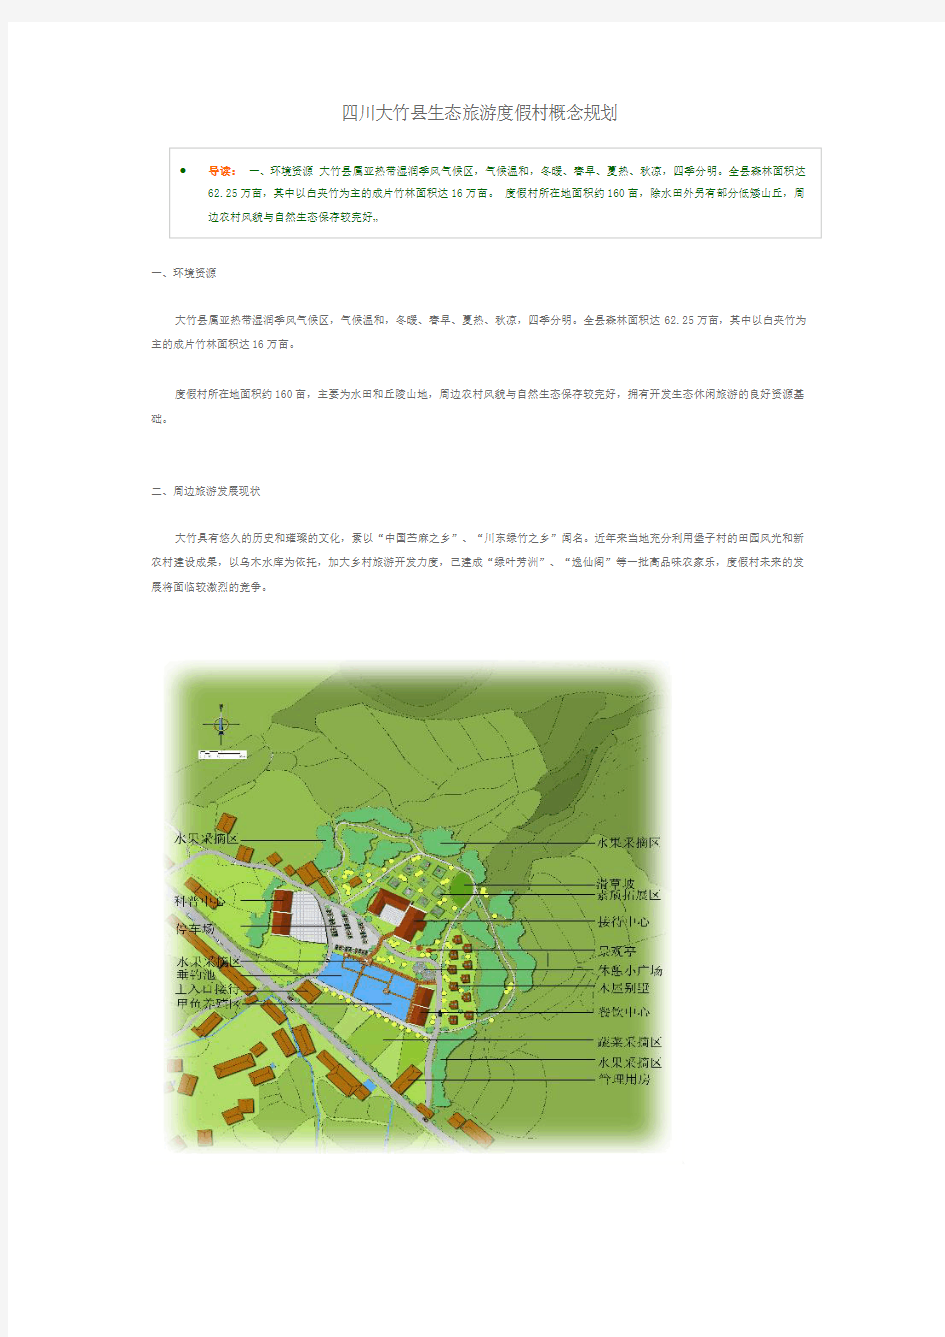 四川大竹县生态旅游度假村概念规划